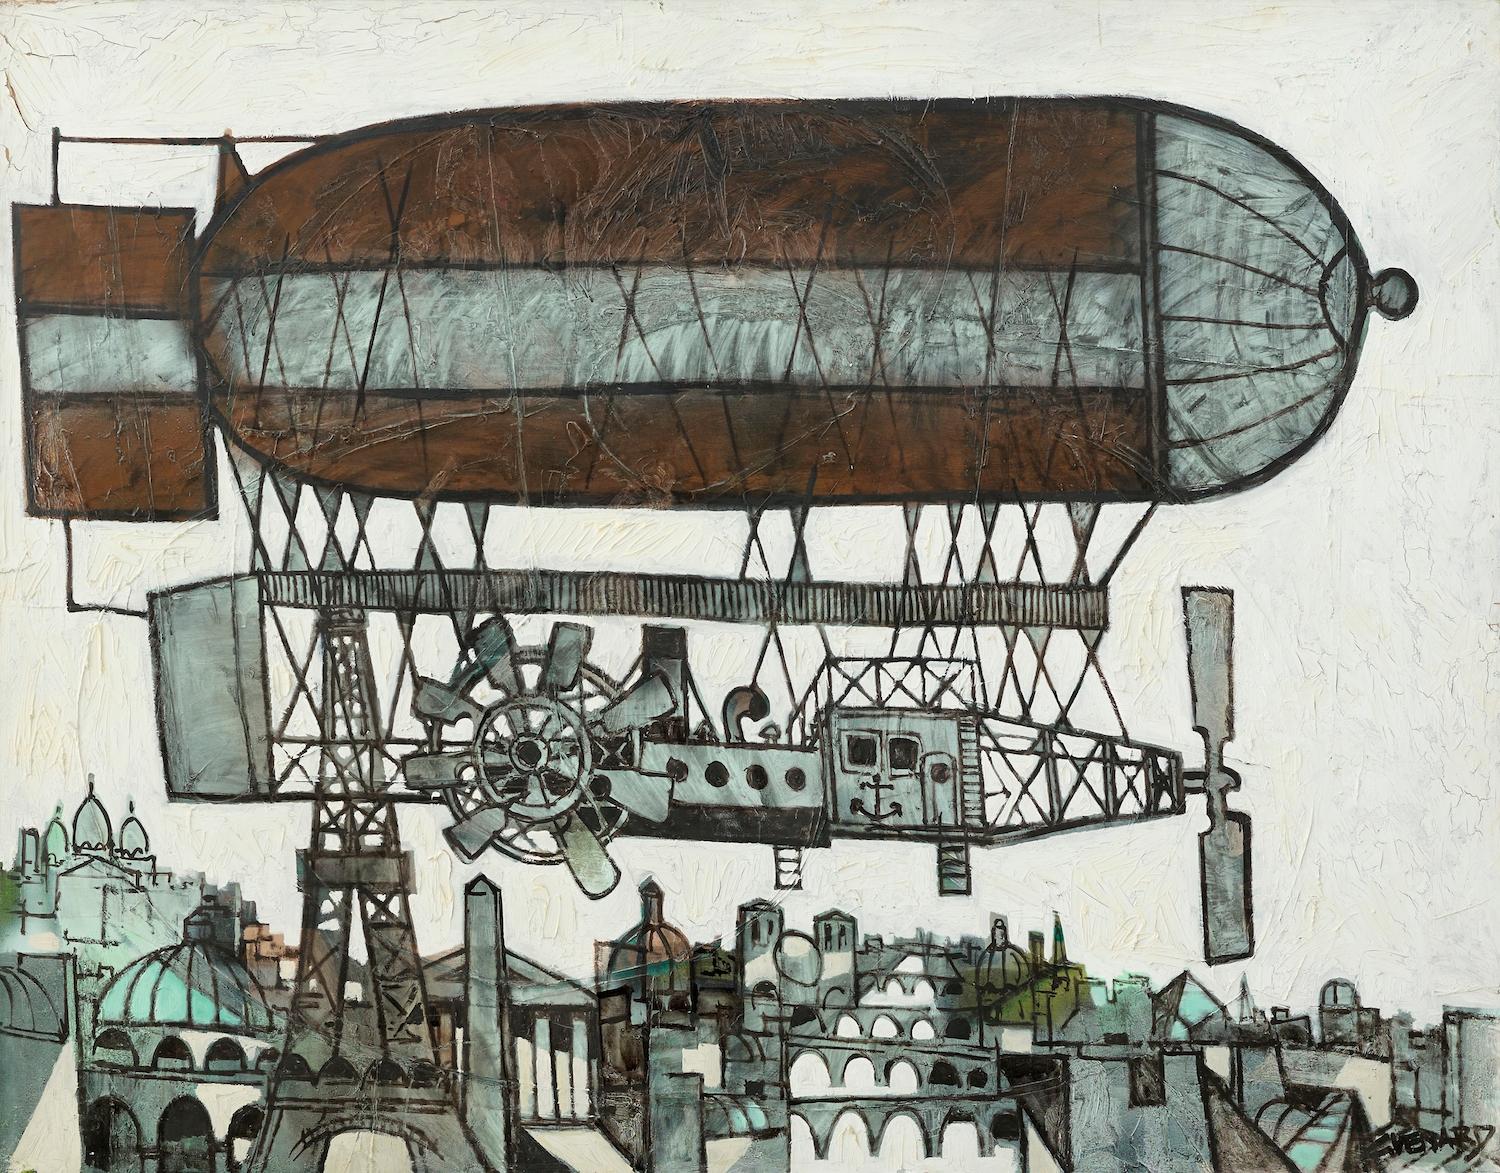 Le Aeroship' Peinture à l'huile chromatique post-cubiste, marron, gris et blanc. Le ciel de Paris